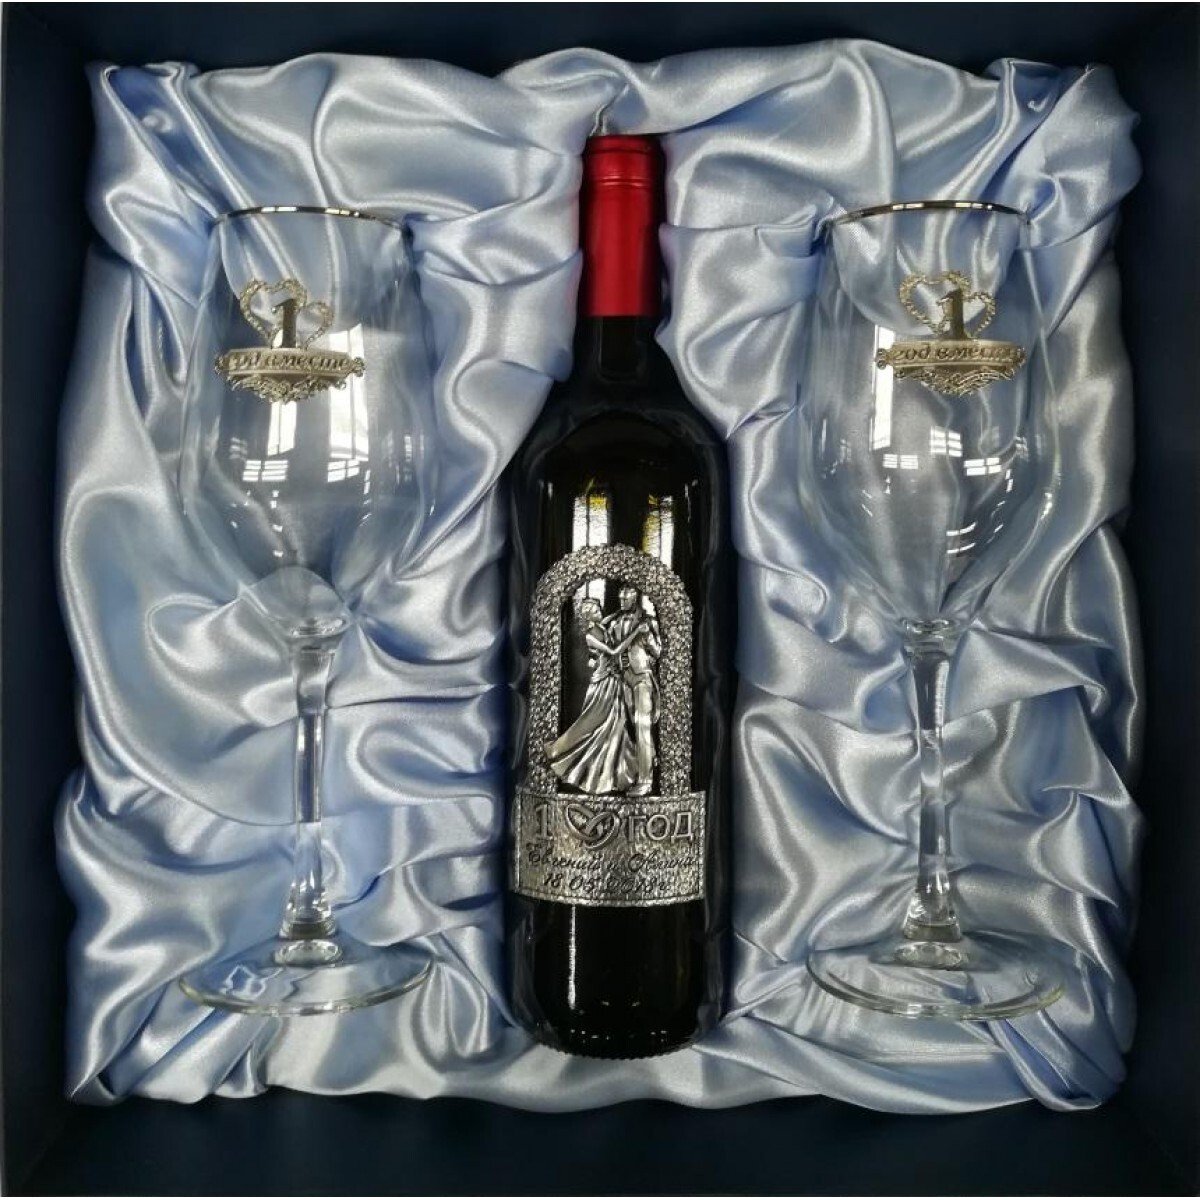 Купить подарок на годовщину. Подарочный набор для вина. Подарок вино и бокал. Подарочный набор бокалов для вина. Бокал вина в подарок.